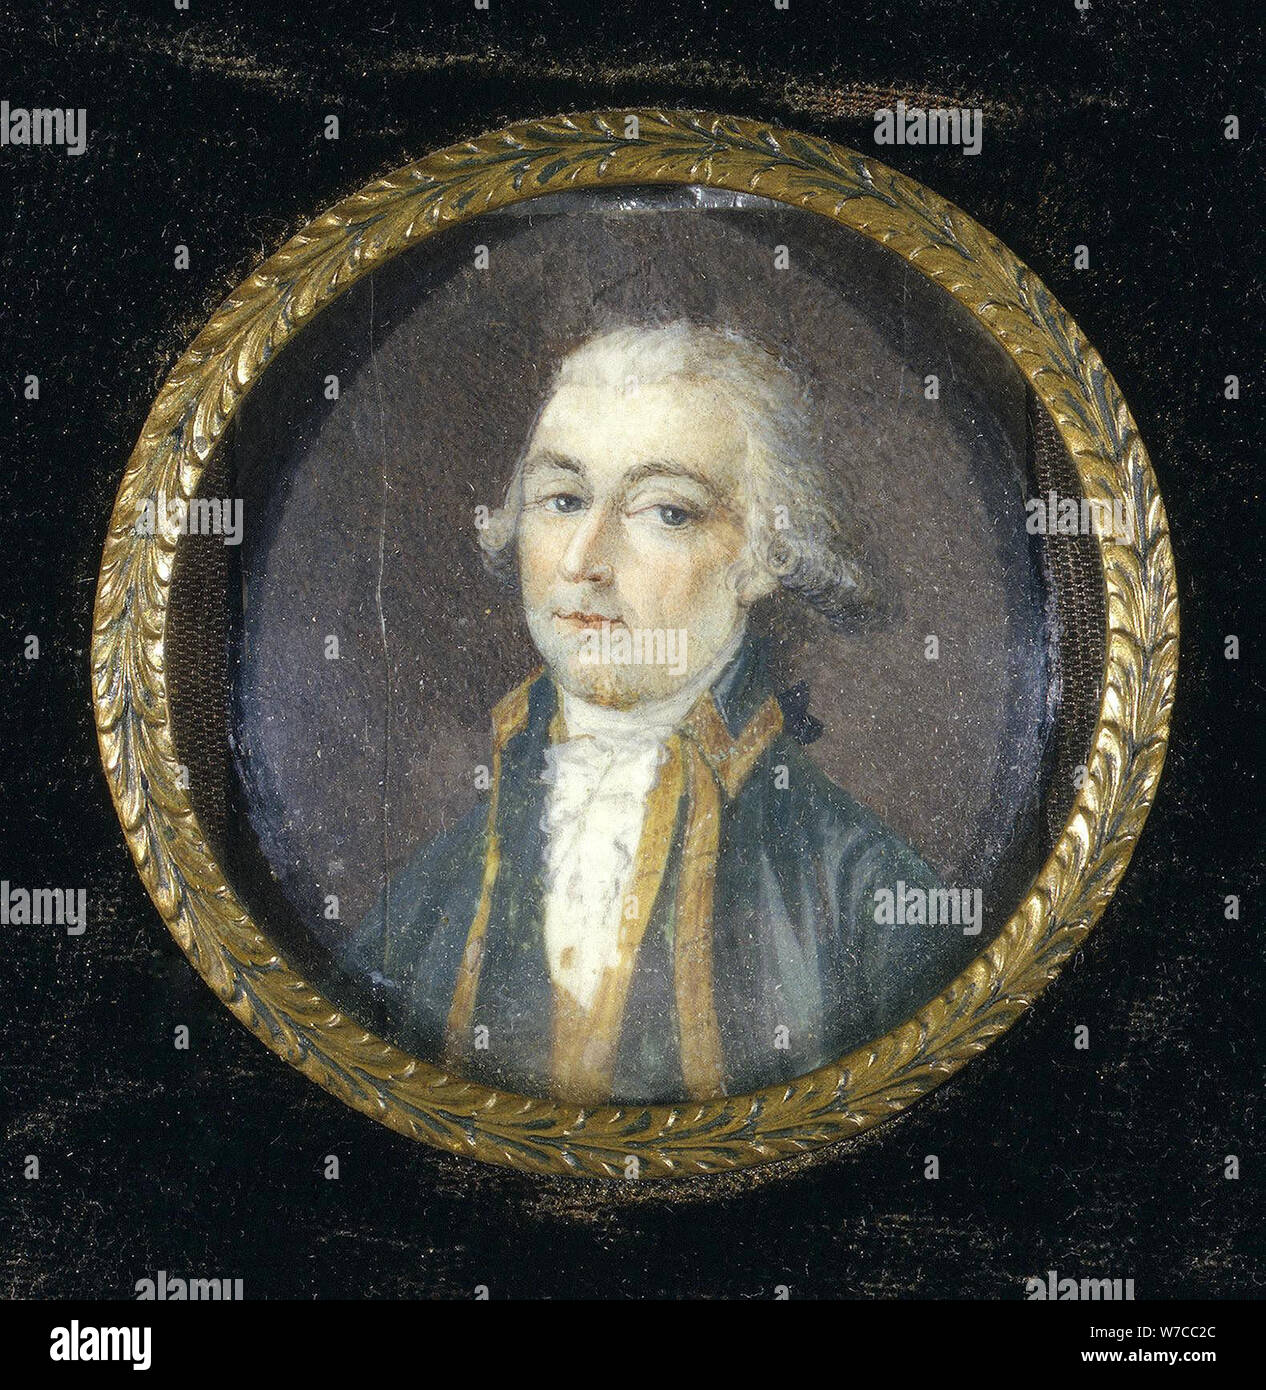 Portrait of Count Alexander Nikolayevich Samoylov (1744-1814). Stock Photo